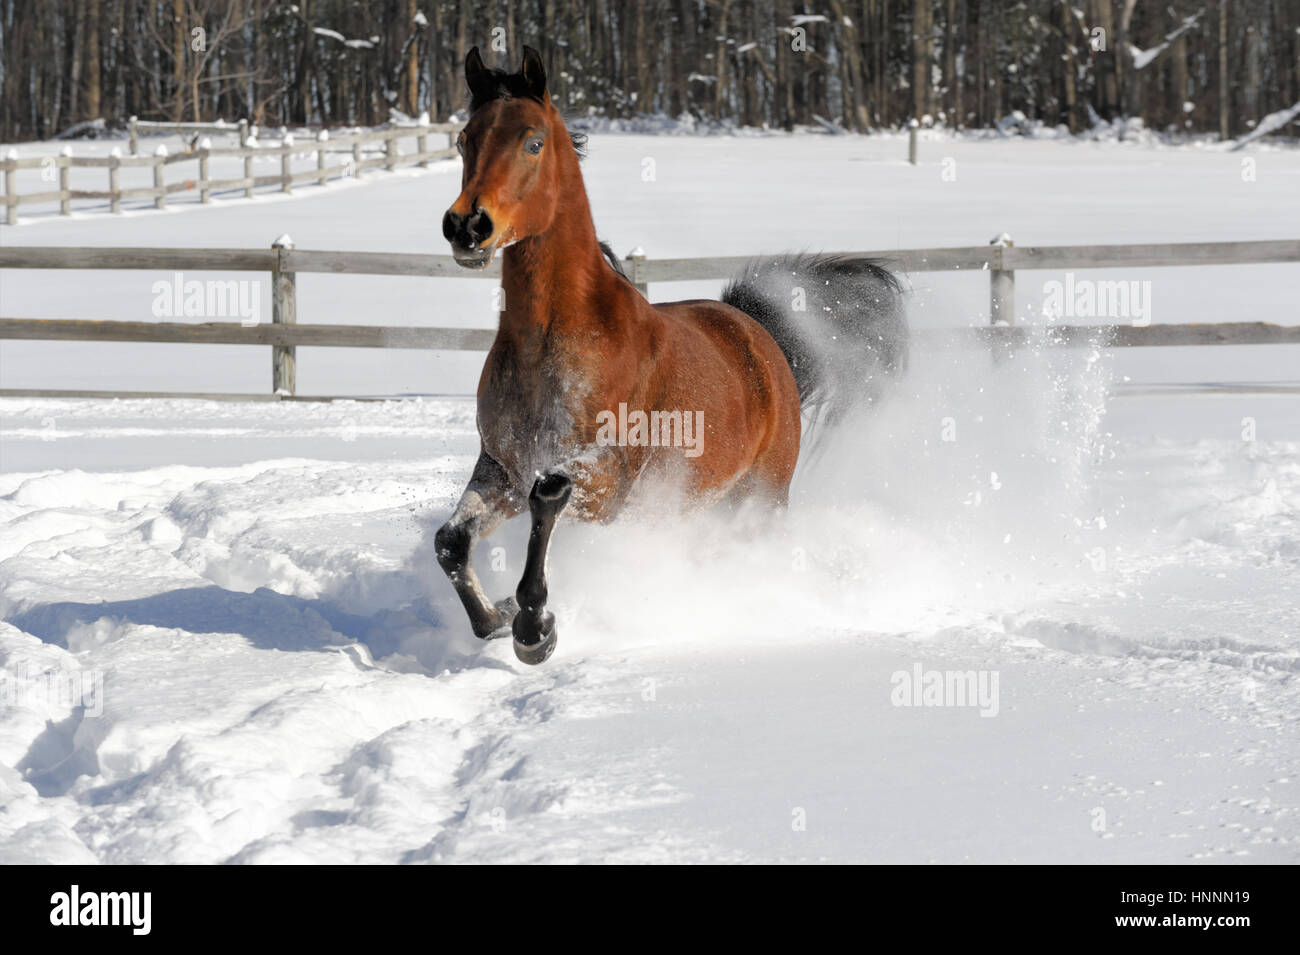 Arabian Bay horse exubérante et tronçonnage en poudreuse profonde dans une zone clôturée, éclairée par le champ d'hiver. Cheval marron avec une crinière noire de pied, USA Banque D'Images